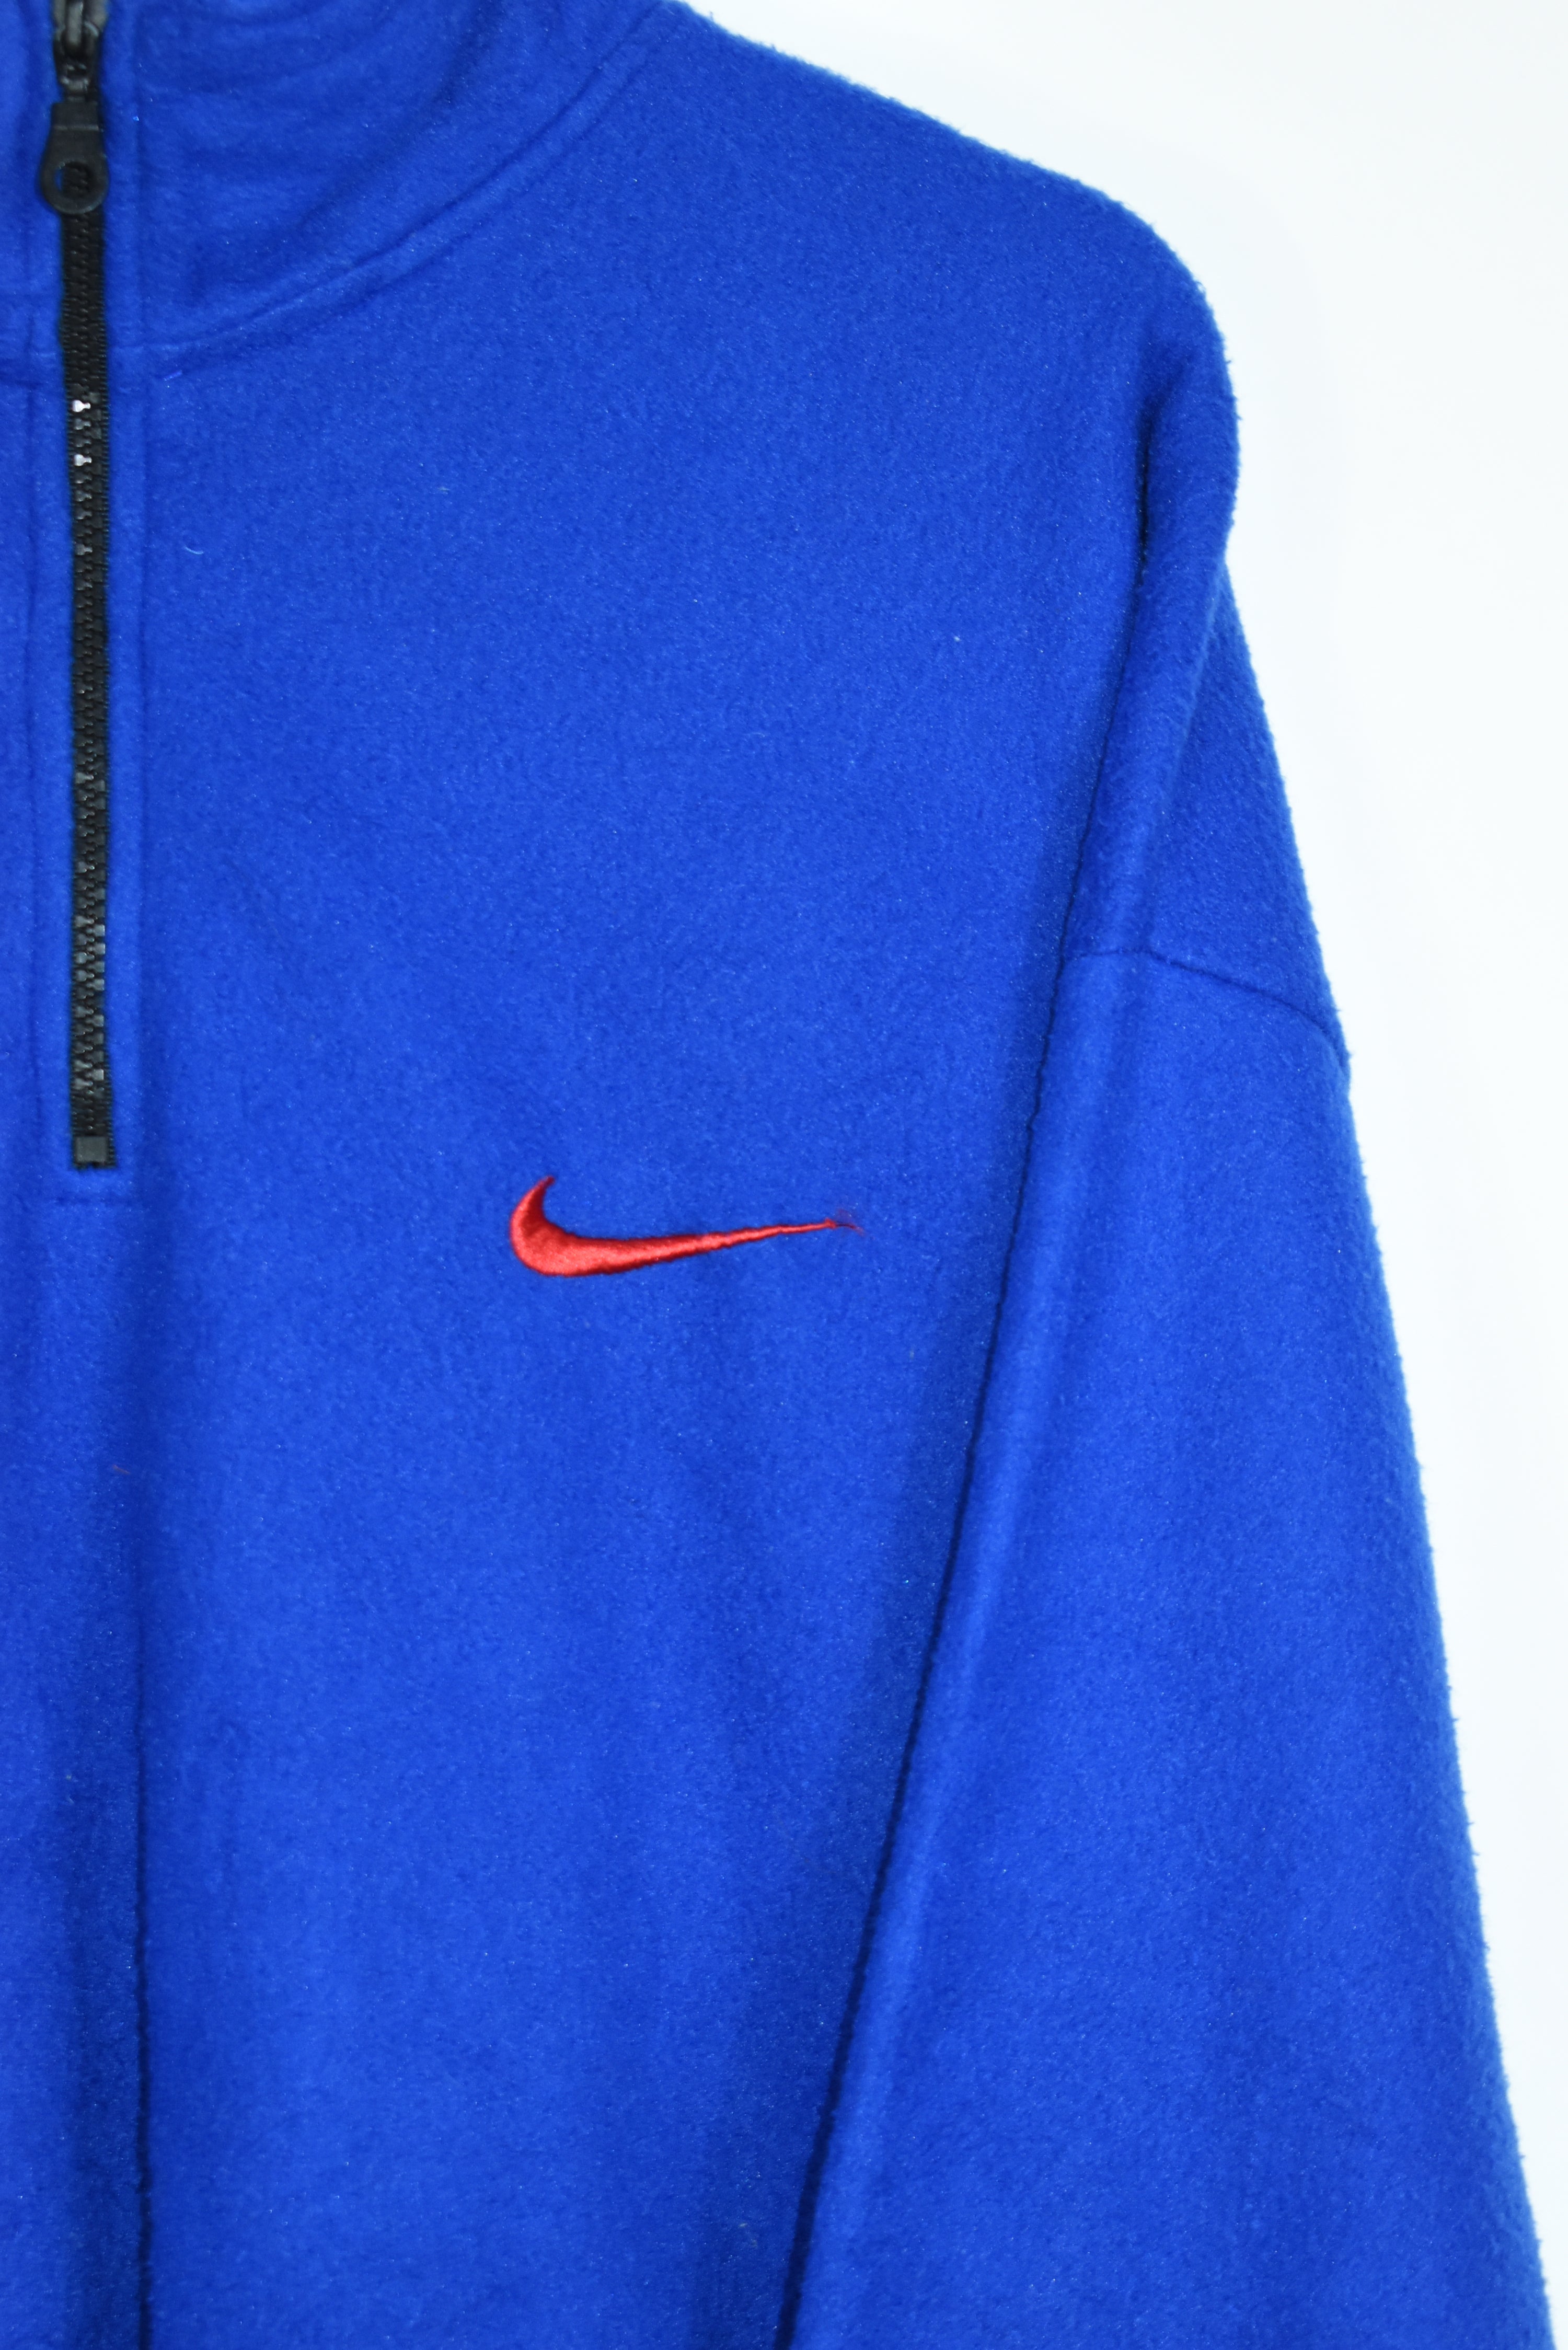 Vintage Nike Embroidery Swoosh Fleece XXL